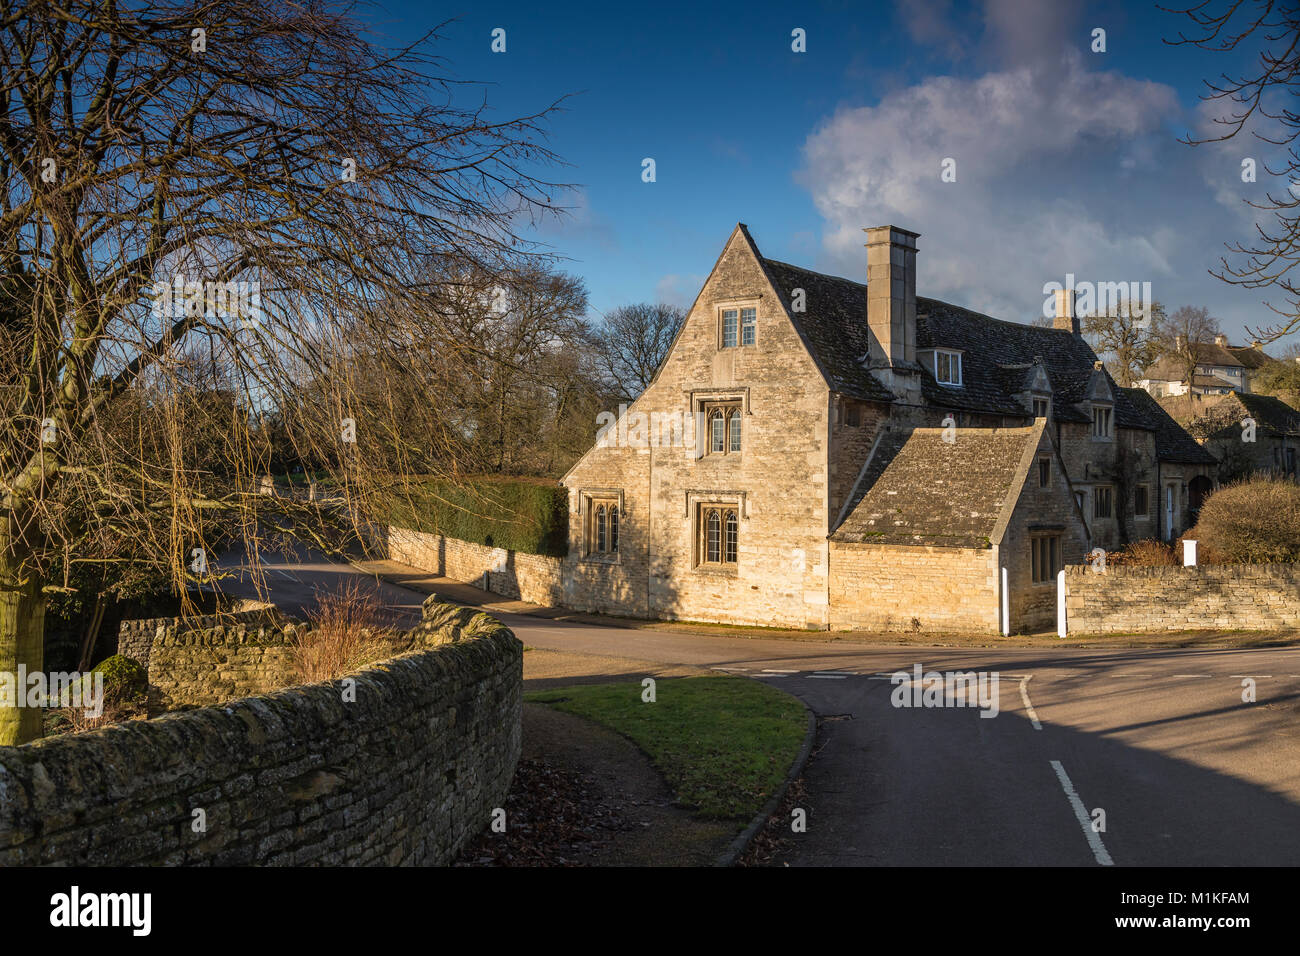 Una imagen de una hermosa casa de campo situada en la esquina de dos calles en la aldea de Duddington, Northamptonshire, Inglaterra, Reino Unido. Foto de stock